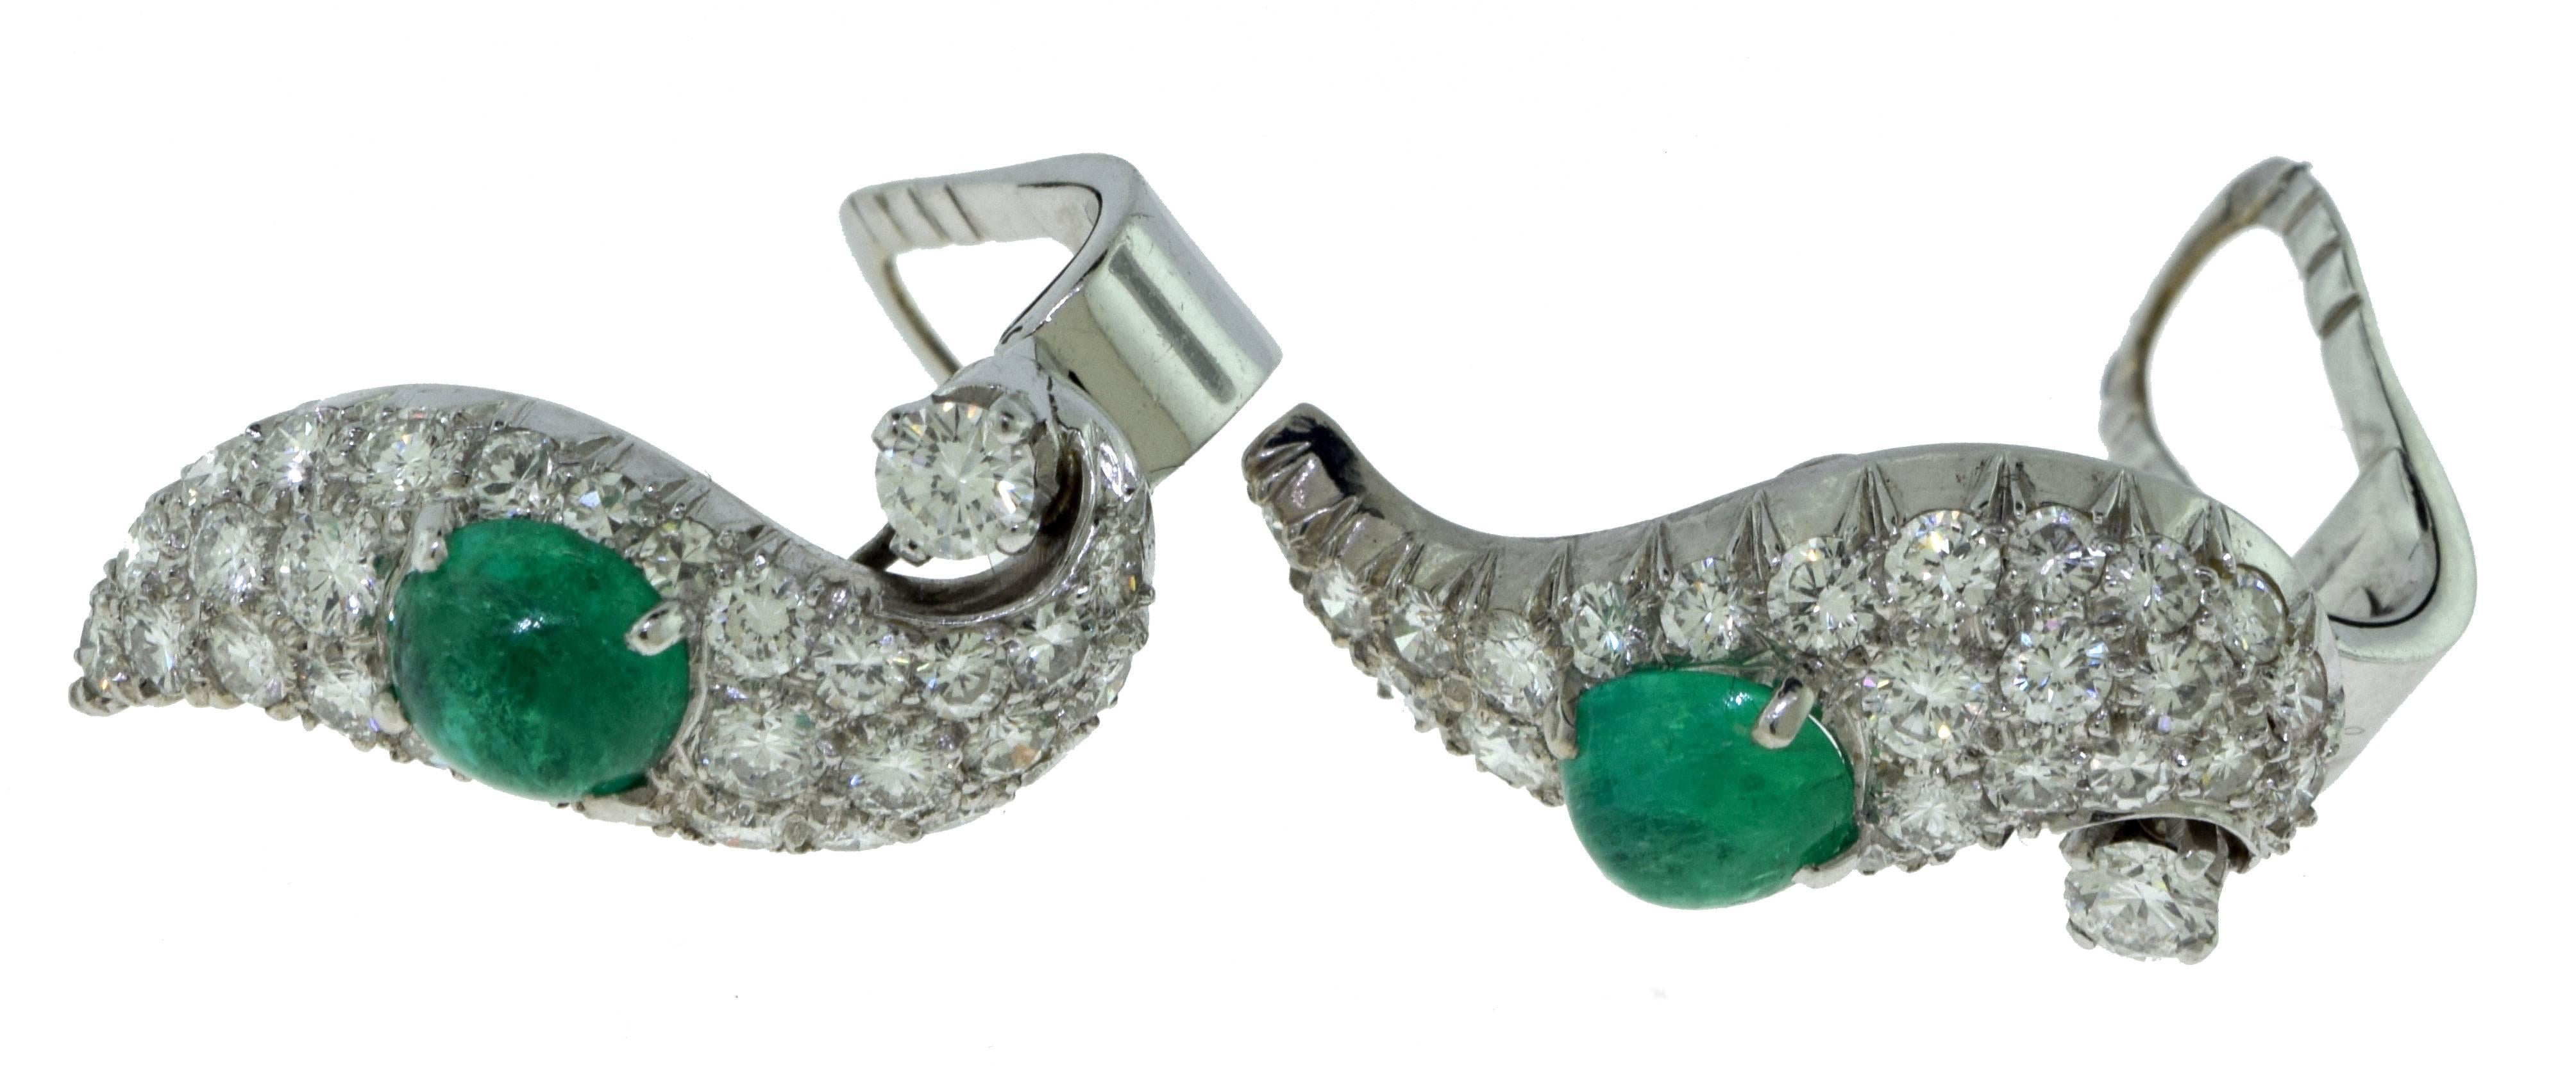 Metal: Platinum
Stones: Emeralds
Total Carat Weight: 5 carat
Dimensions: 1.0 x 0.45 inches